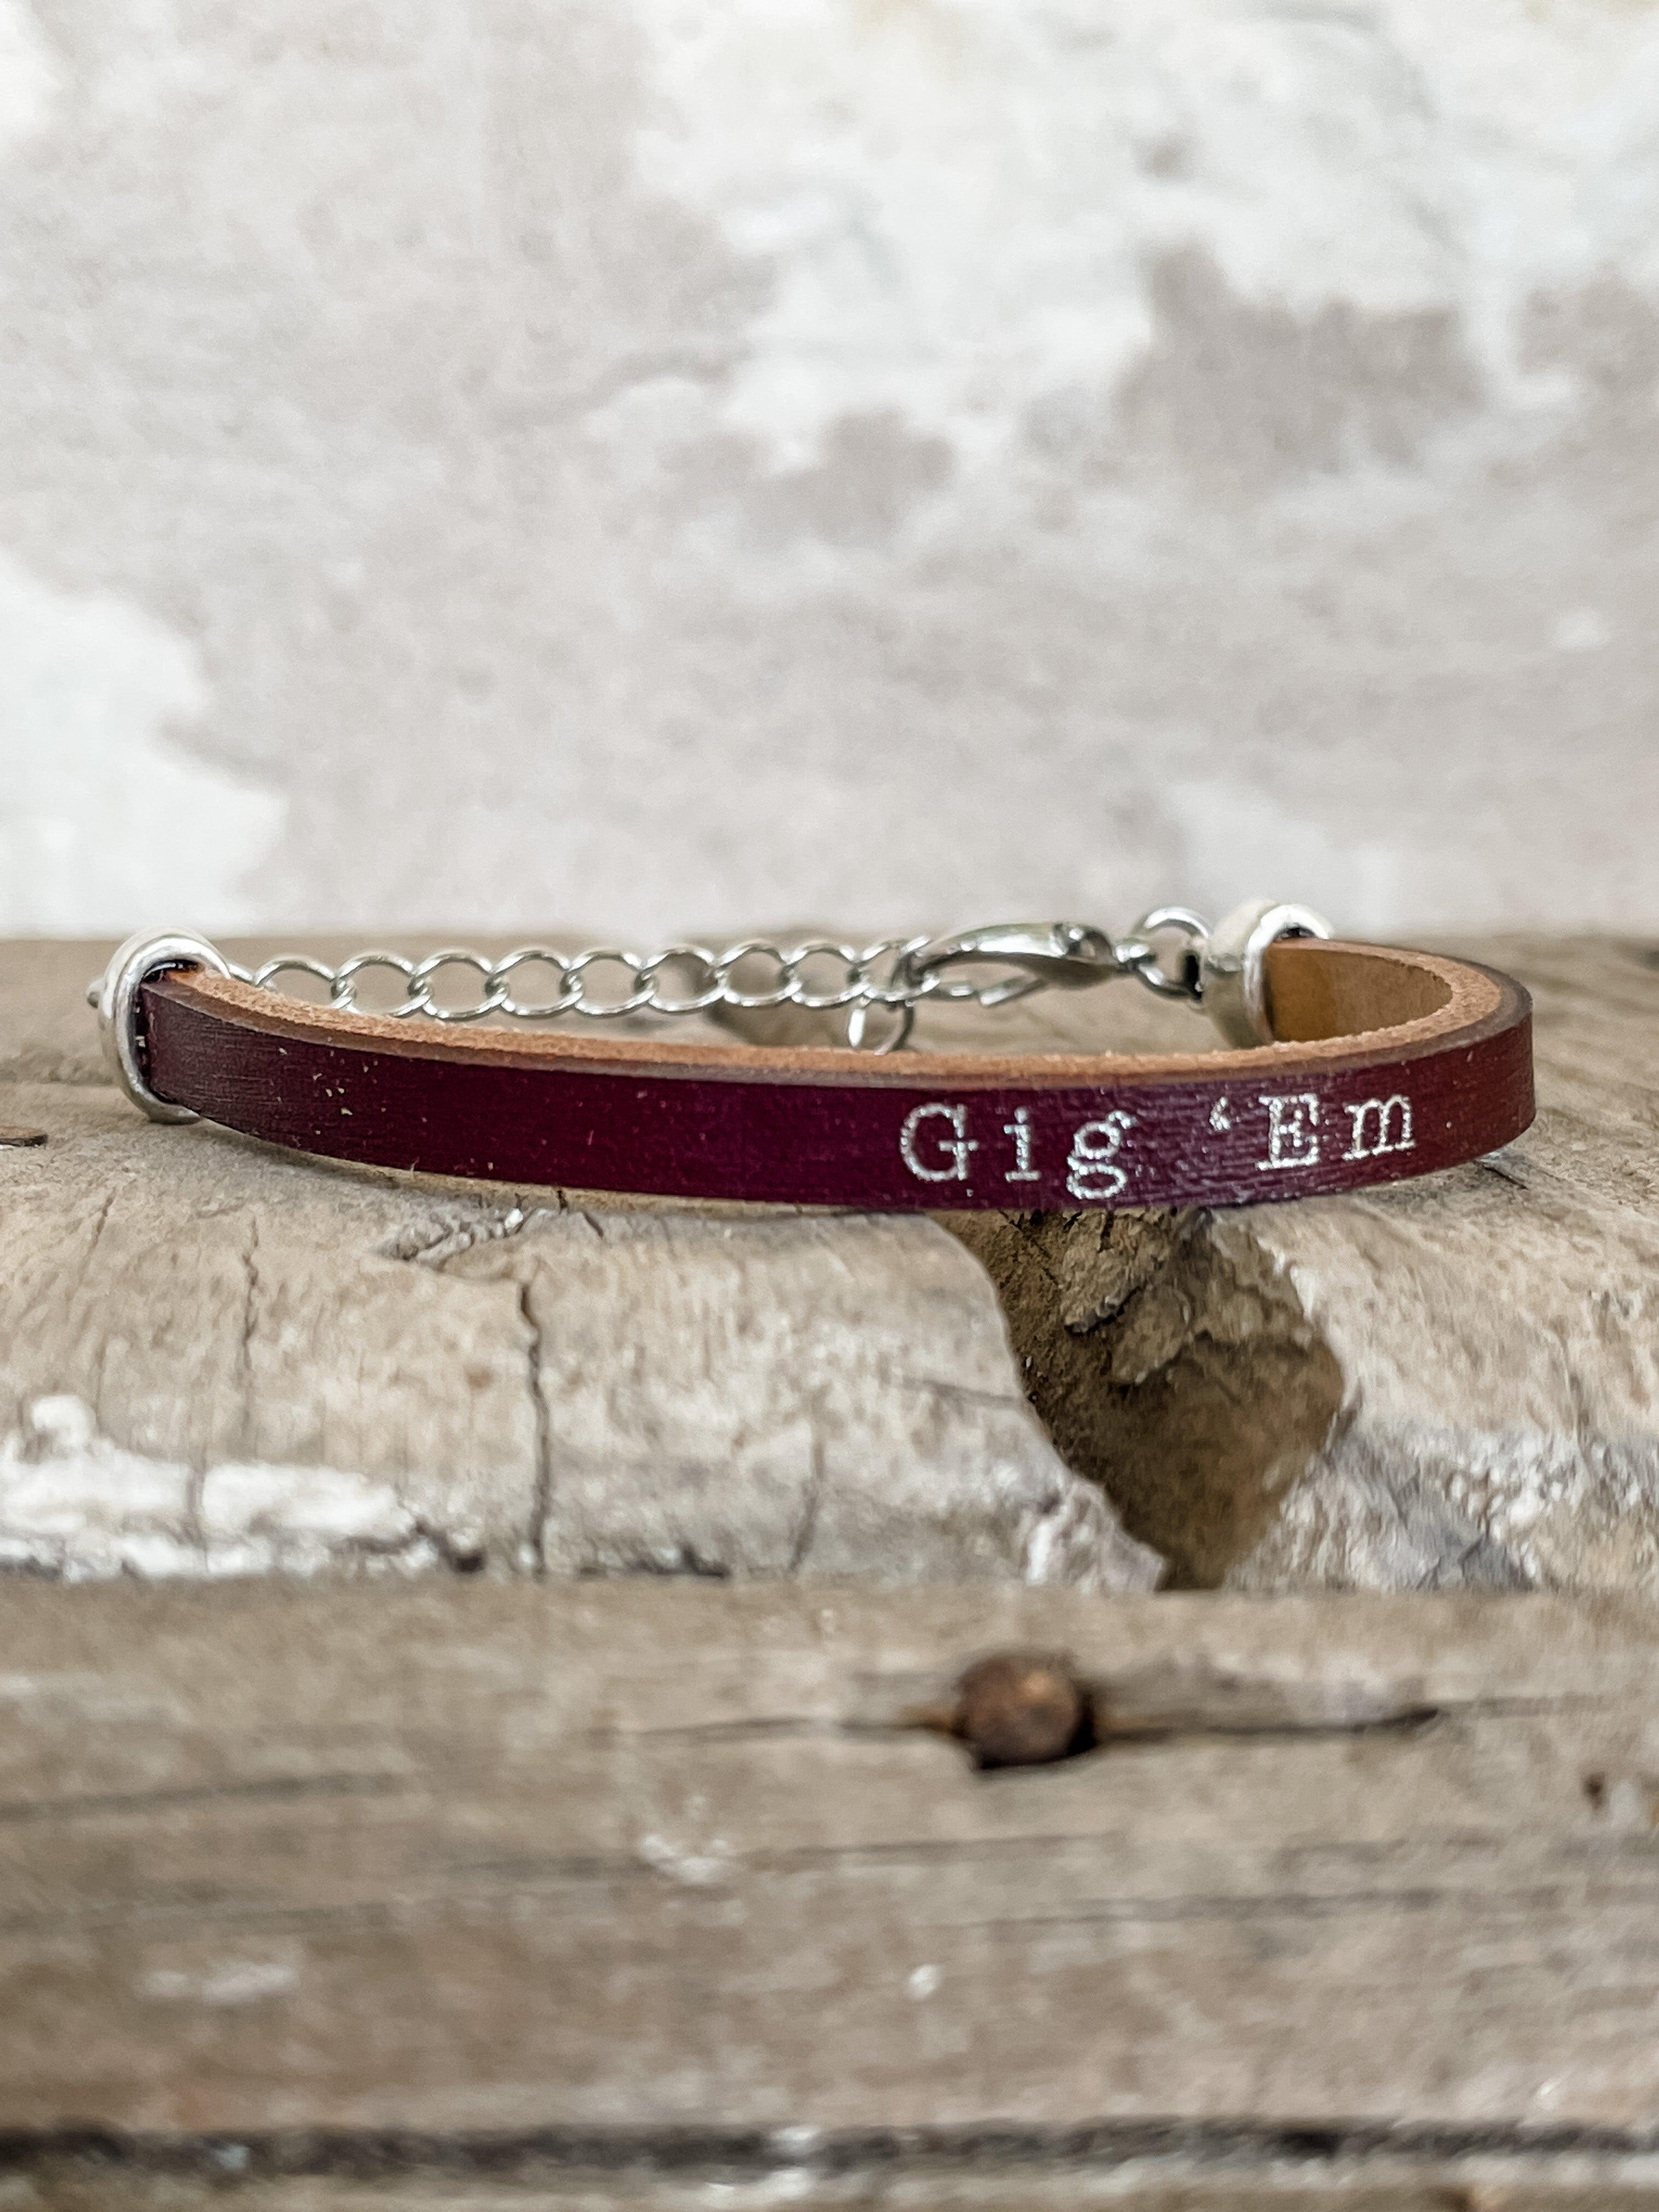 "Gig 'Em" Leather Bracelet - Vintage Soul